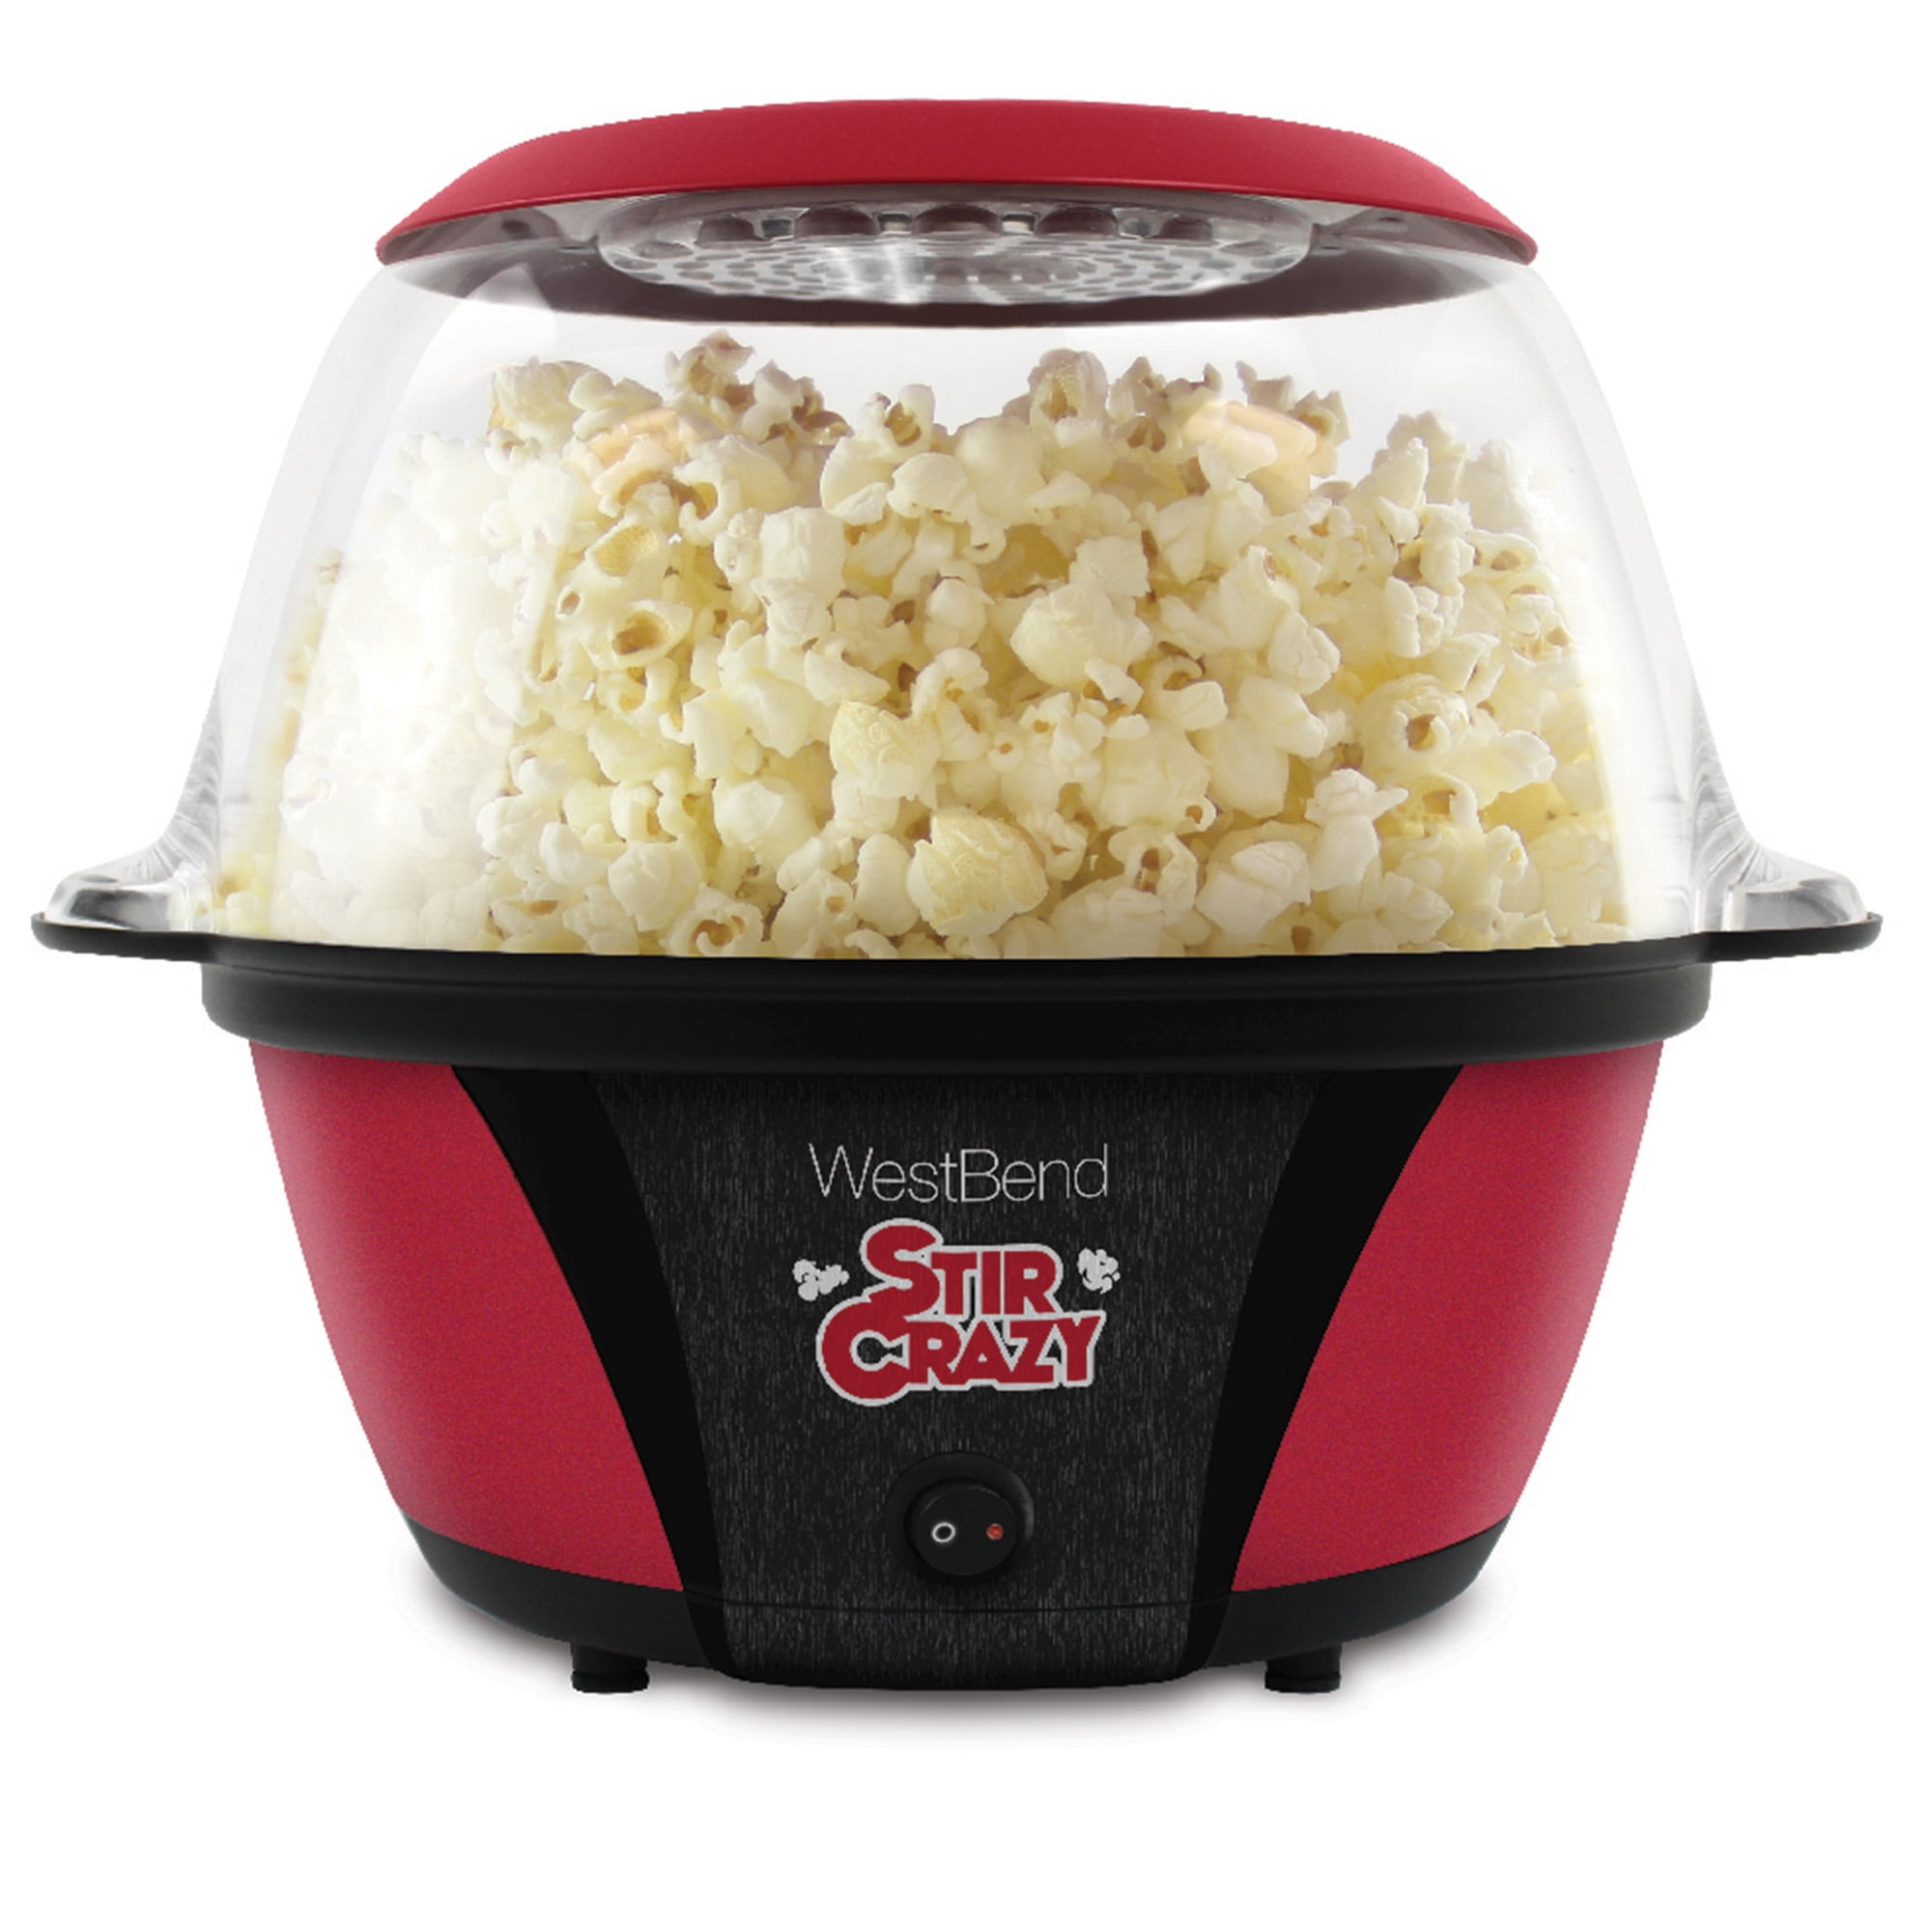 West Bend Stir Crazy 82505 Popcorn Maker Review